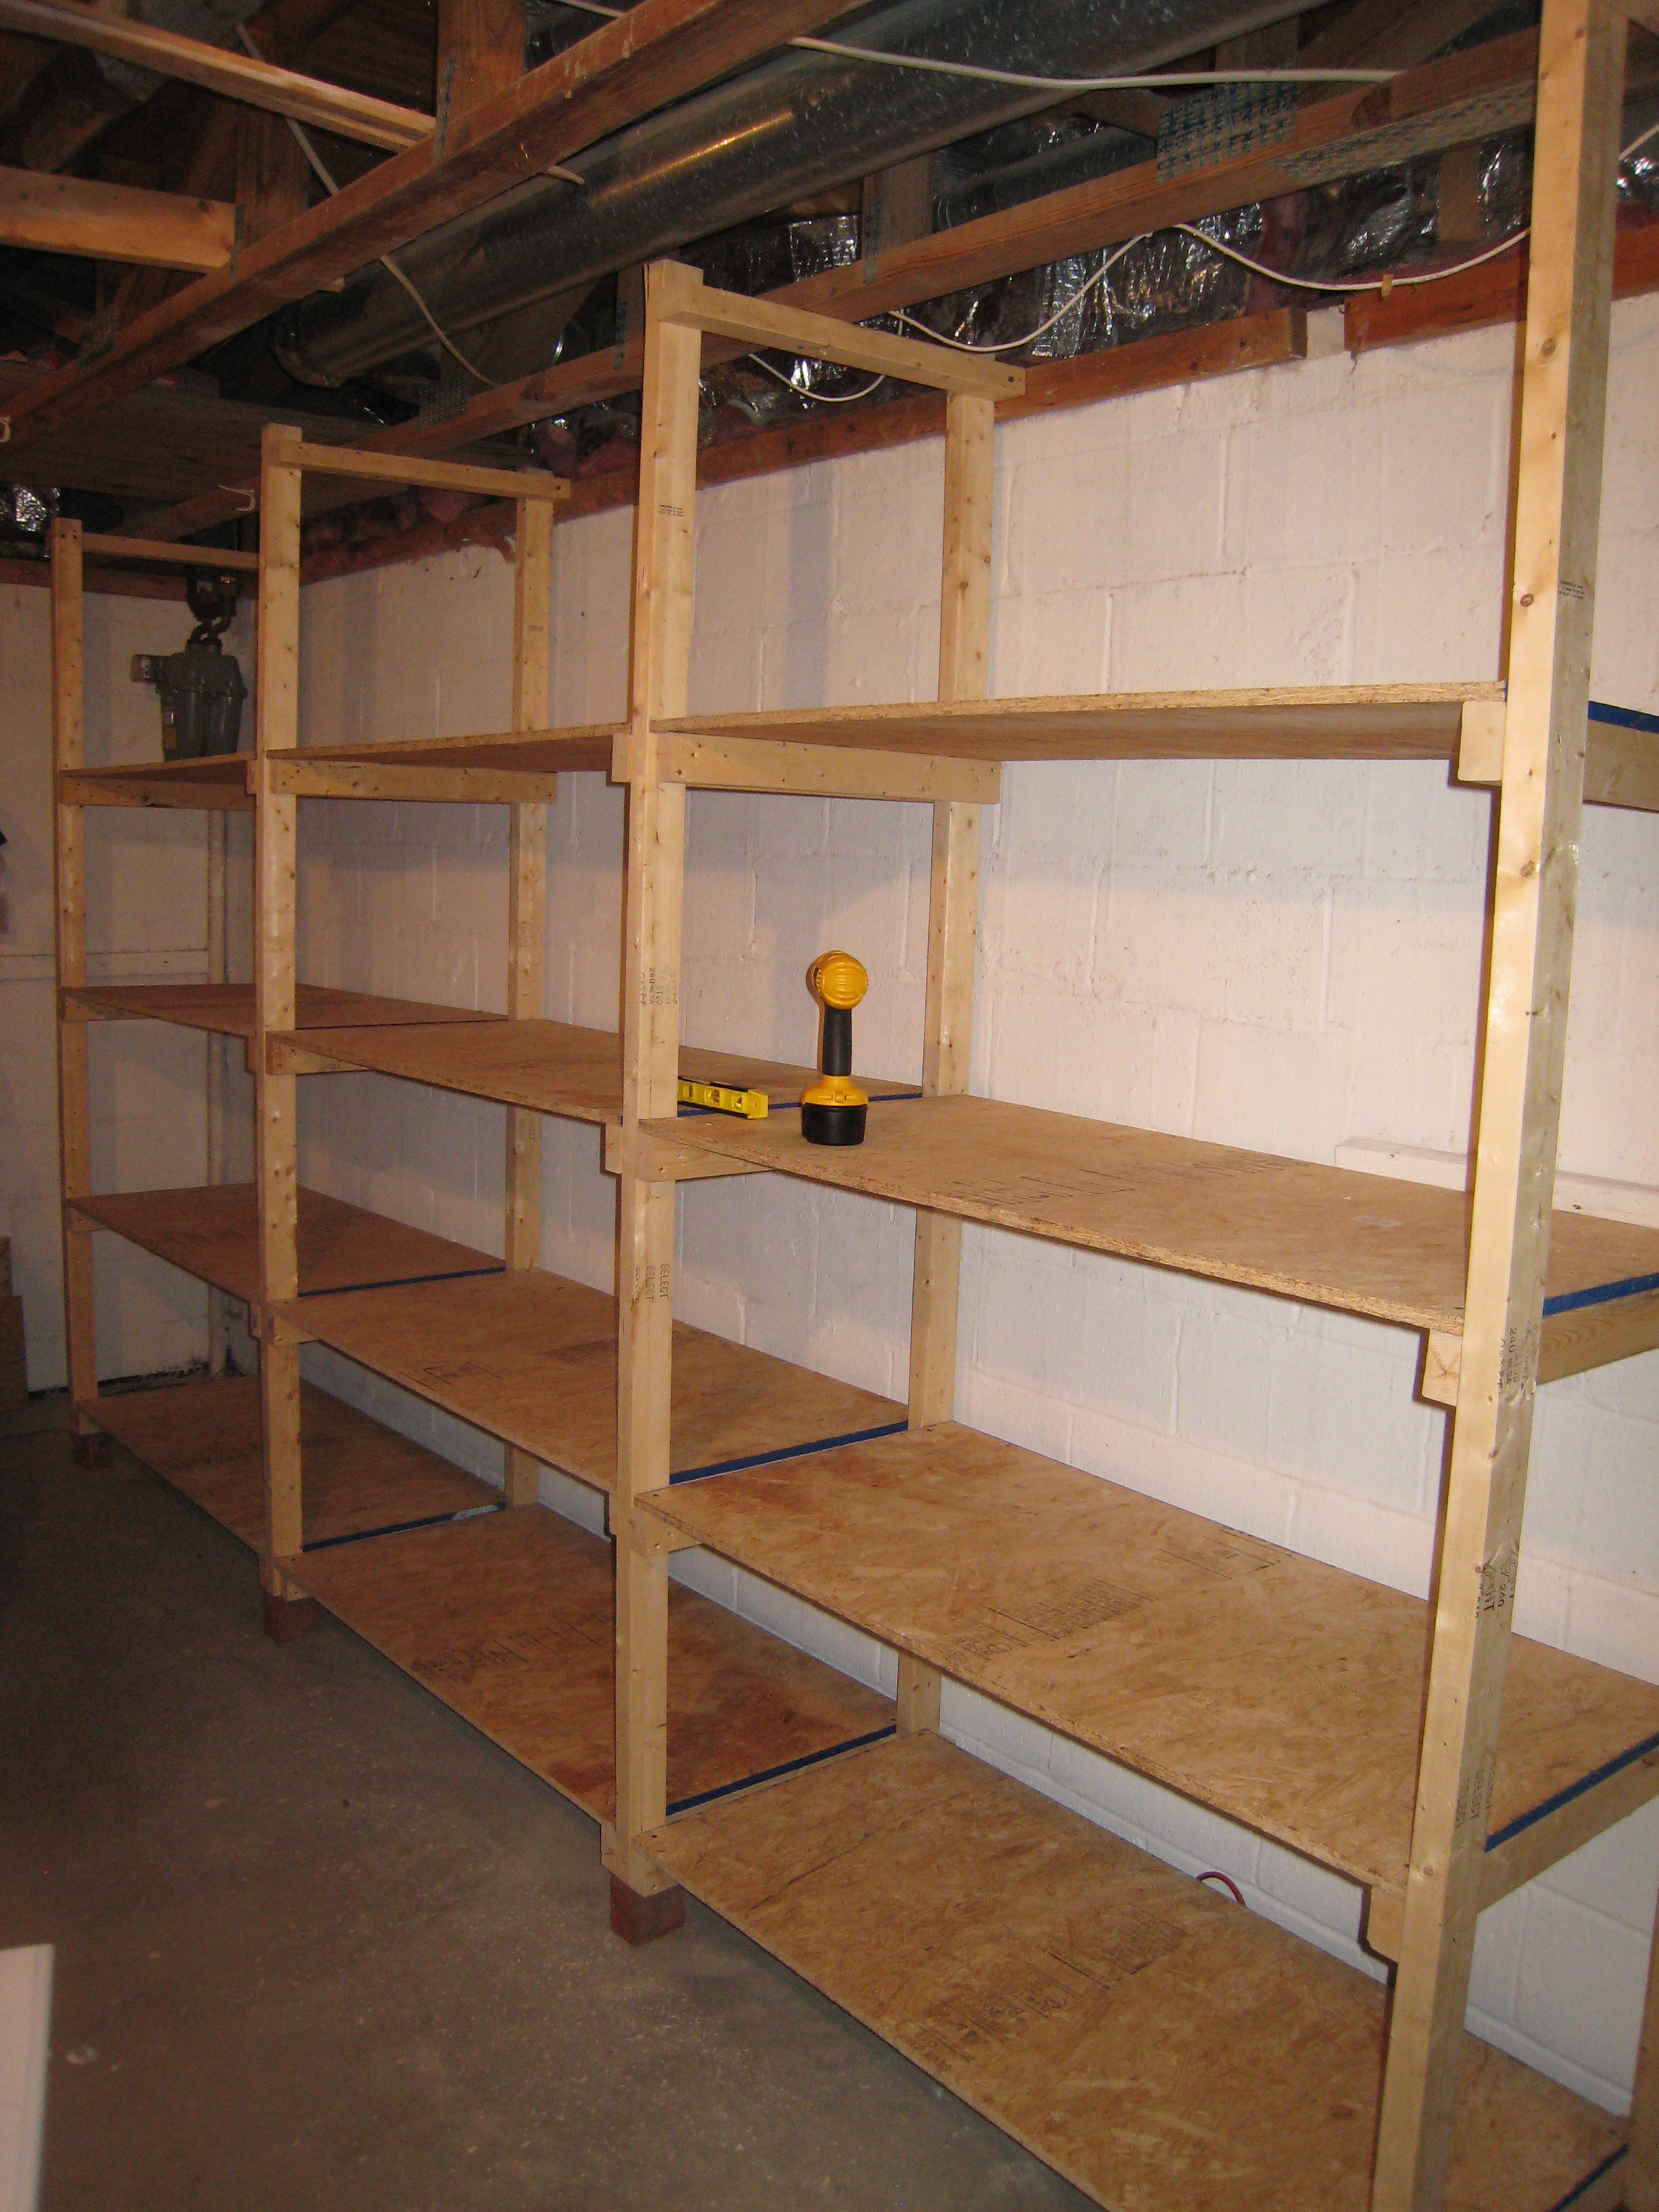 Best ideas about Garage Storage Plans
. Save or Pin build wooden storage shelves garage Now.